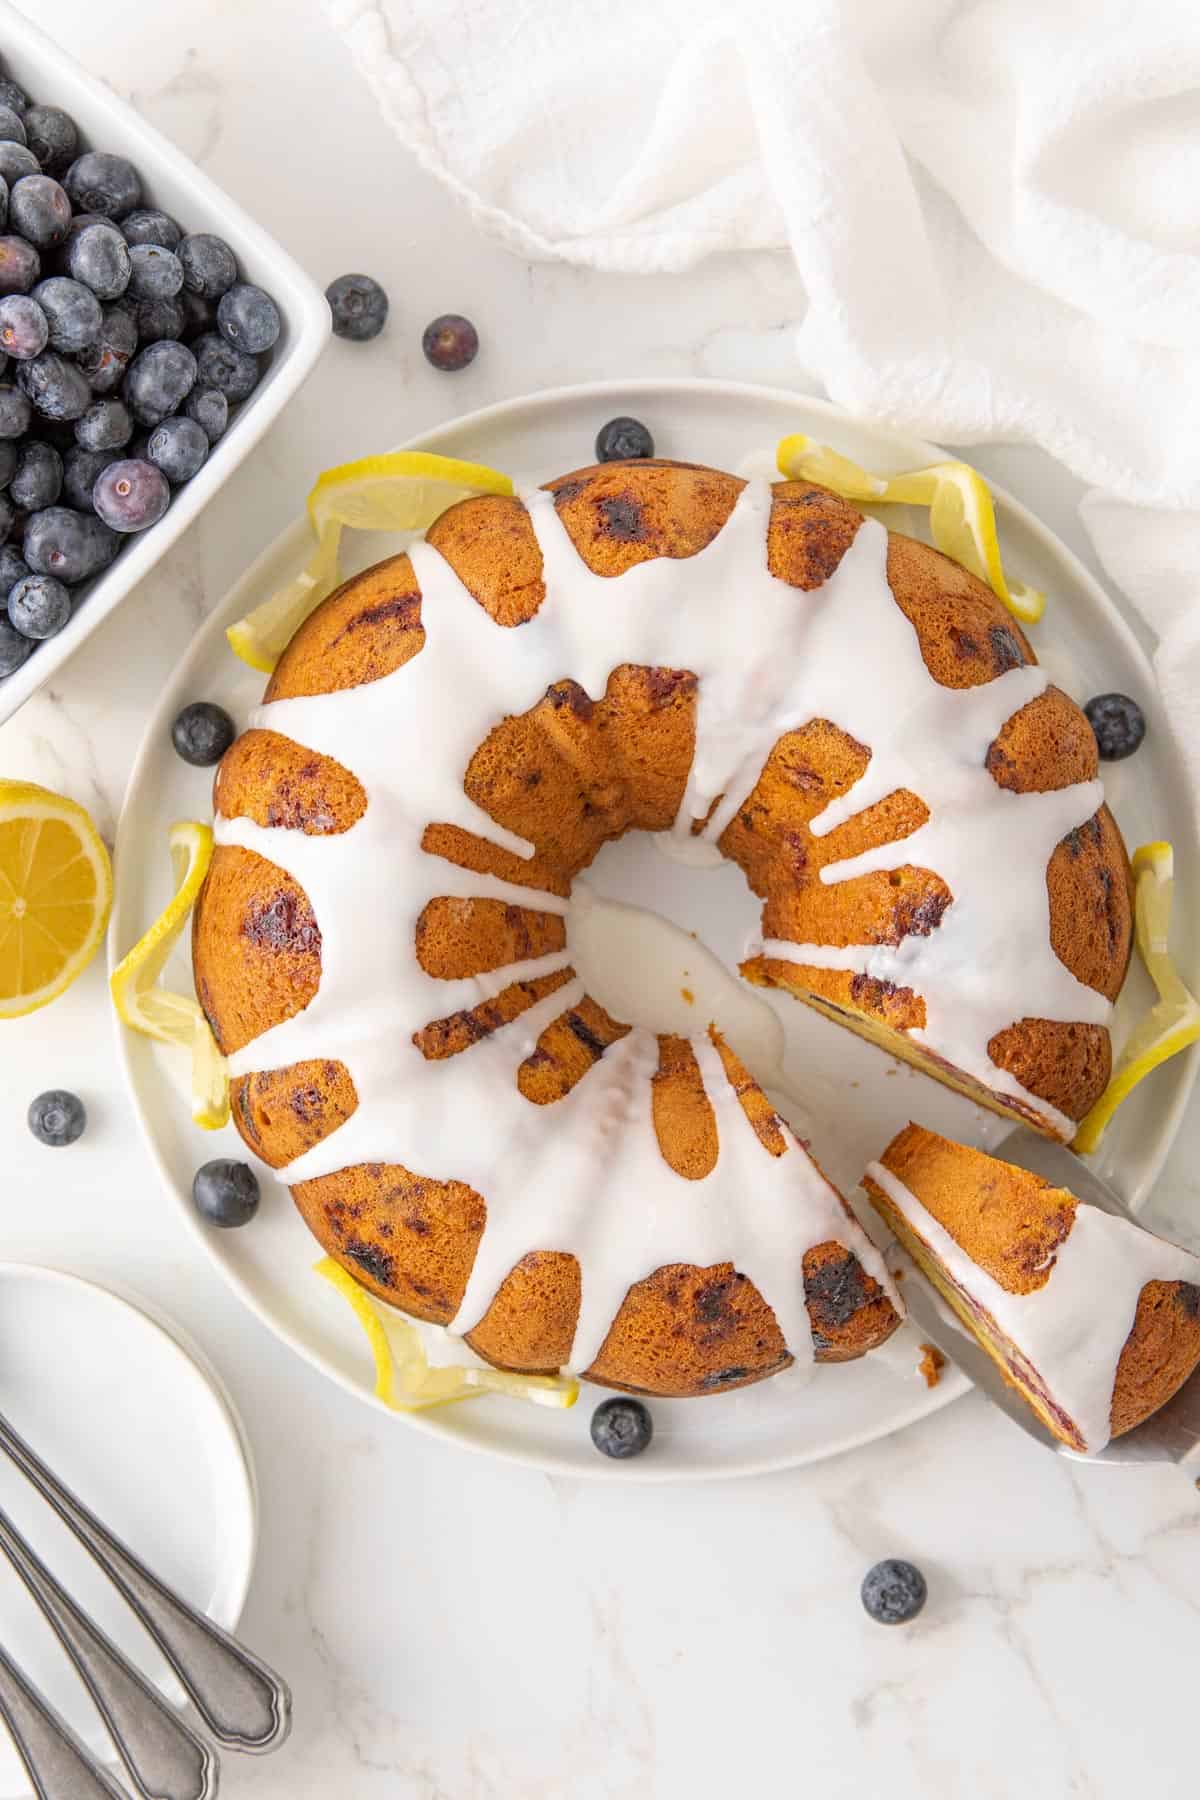 Overhead view of a blueberry lemon Bundt cake on a white cake platter.